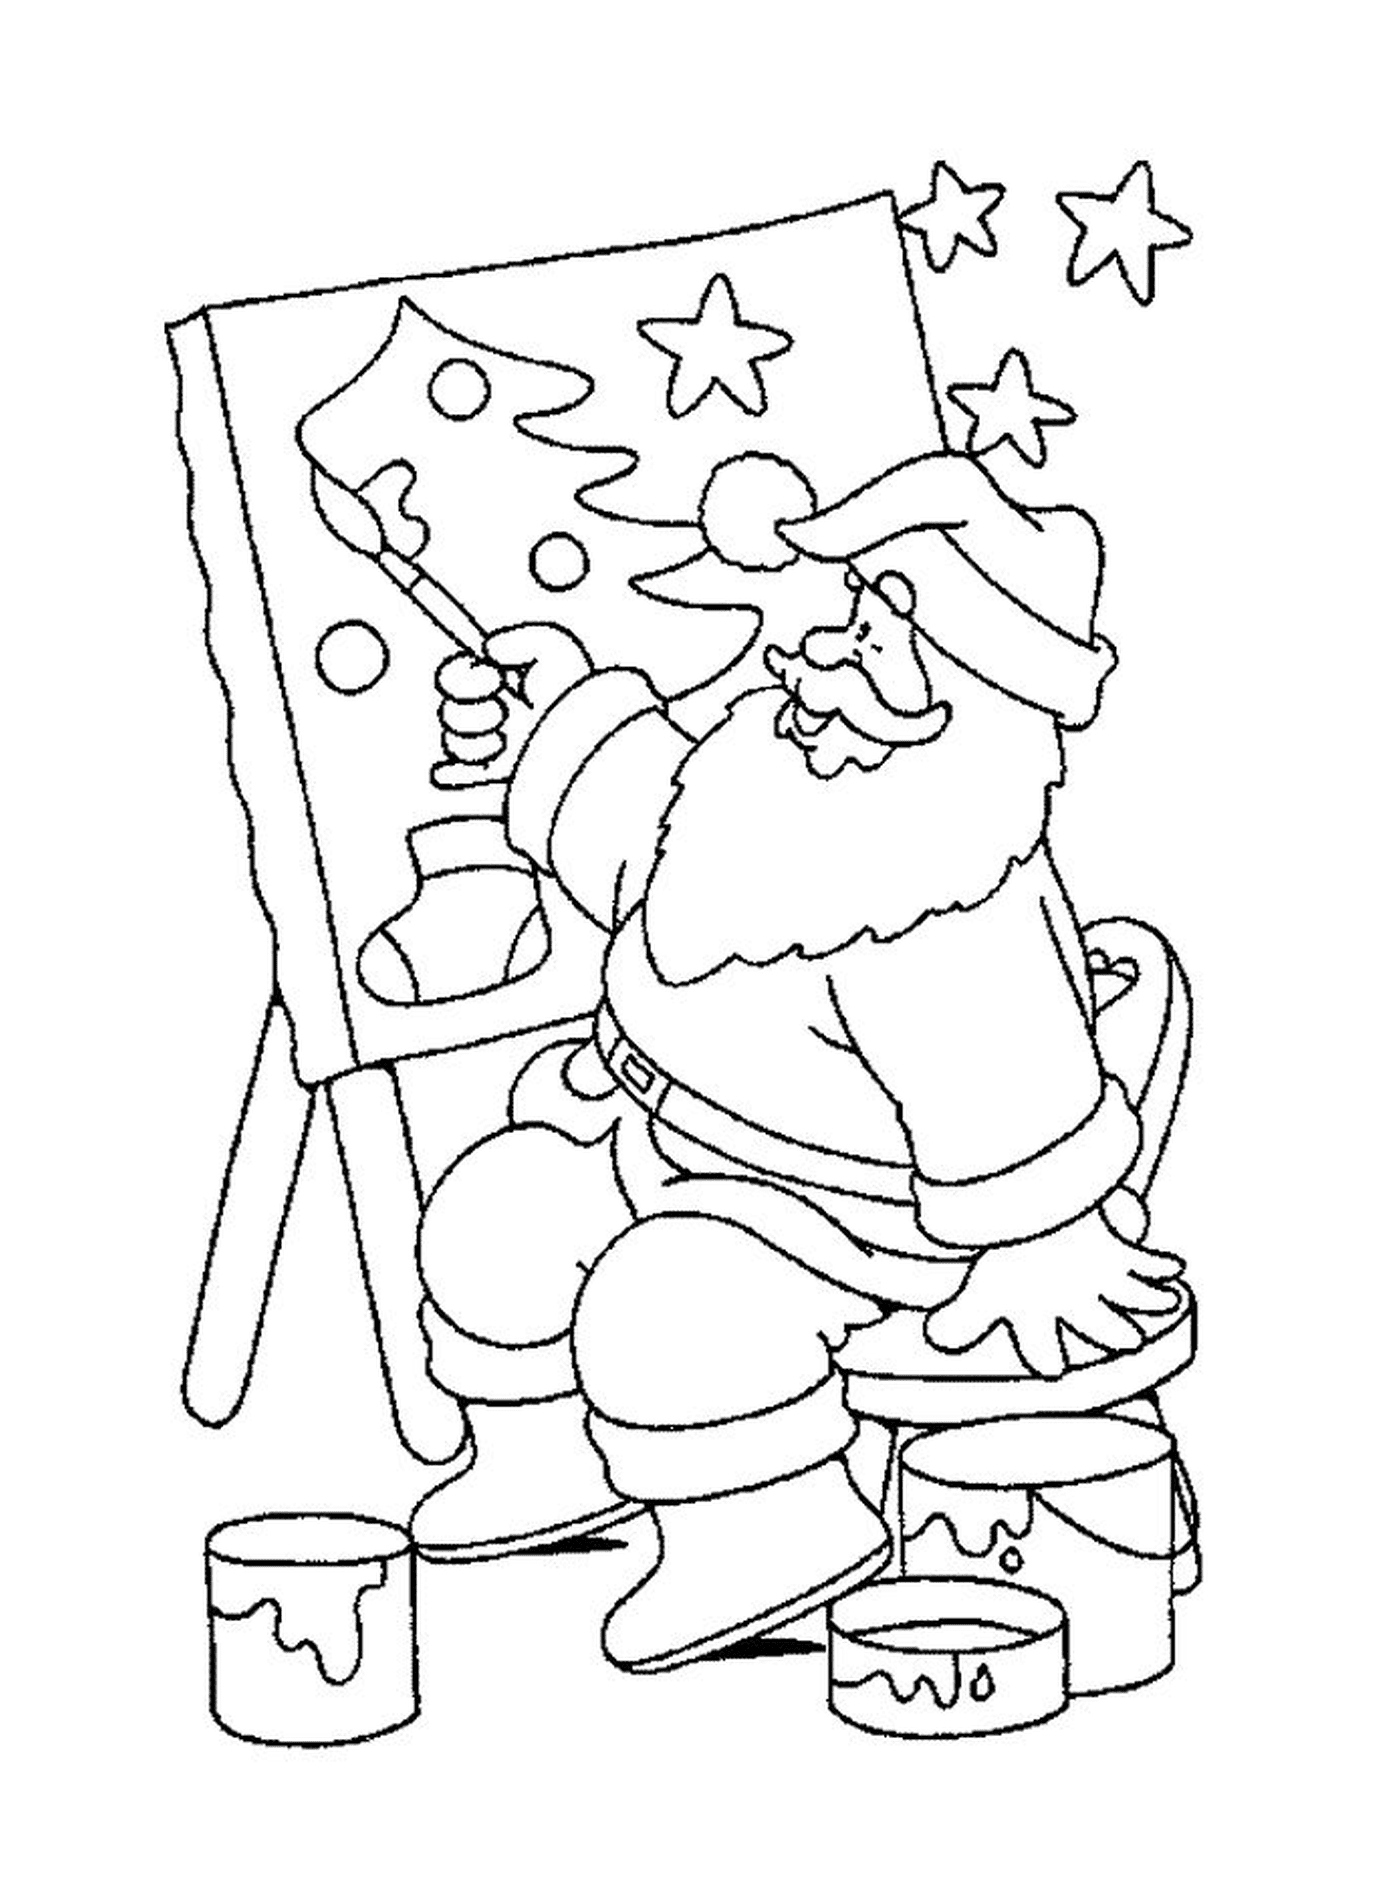  Санта рисует картину 